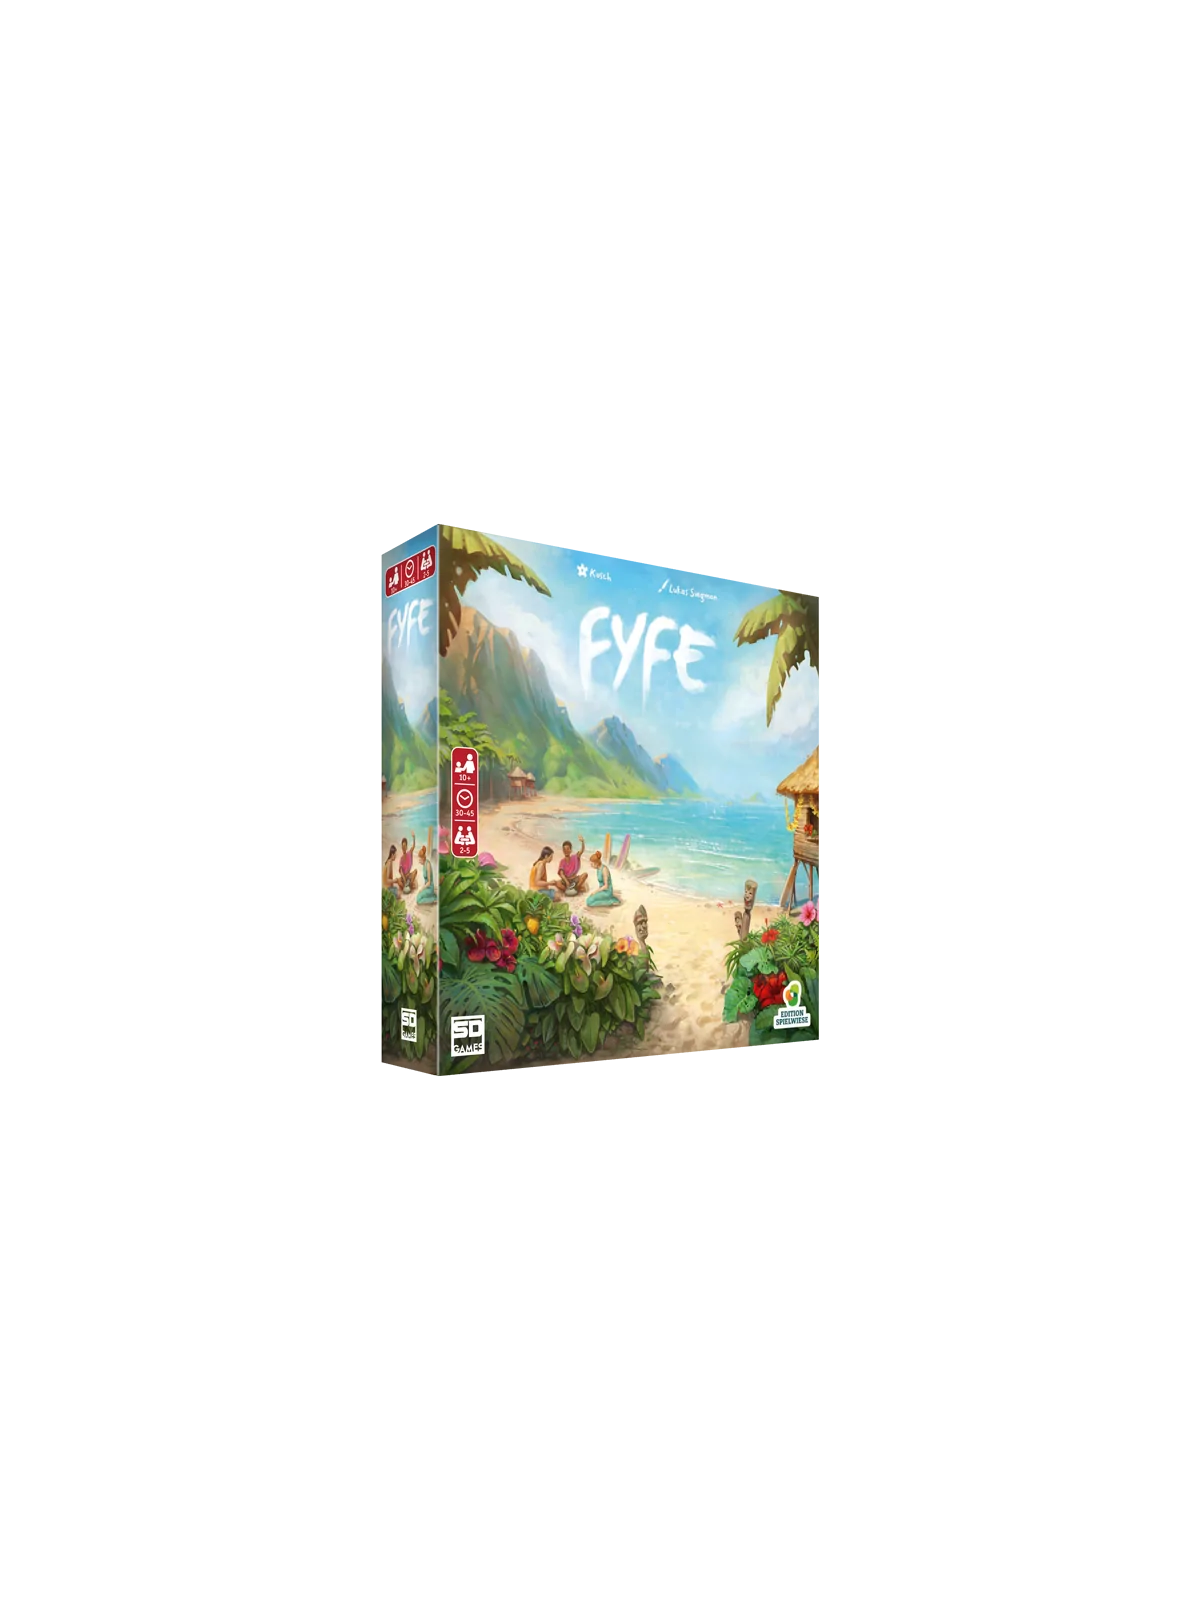 Comprar Fyfe barato al mejor precio 35,96 € de SD GAMES